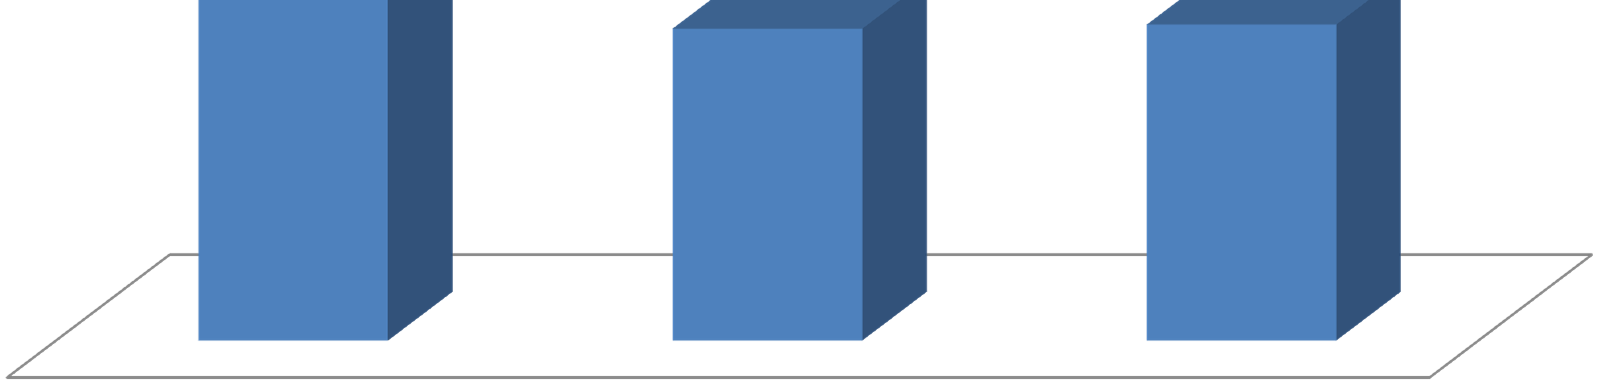 Nytt anlegg/utvidelser 2012 100% 50% 50% Antall